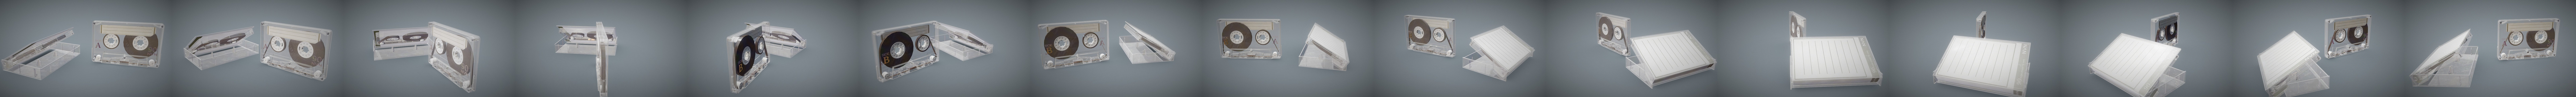 Cassette Tape Case White - 4 Variants | 3D model